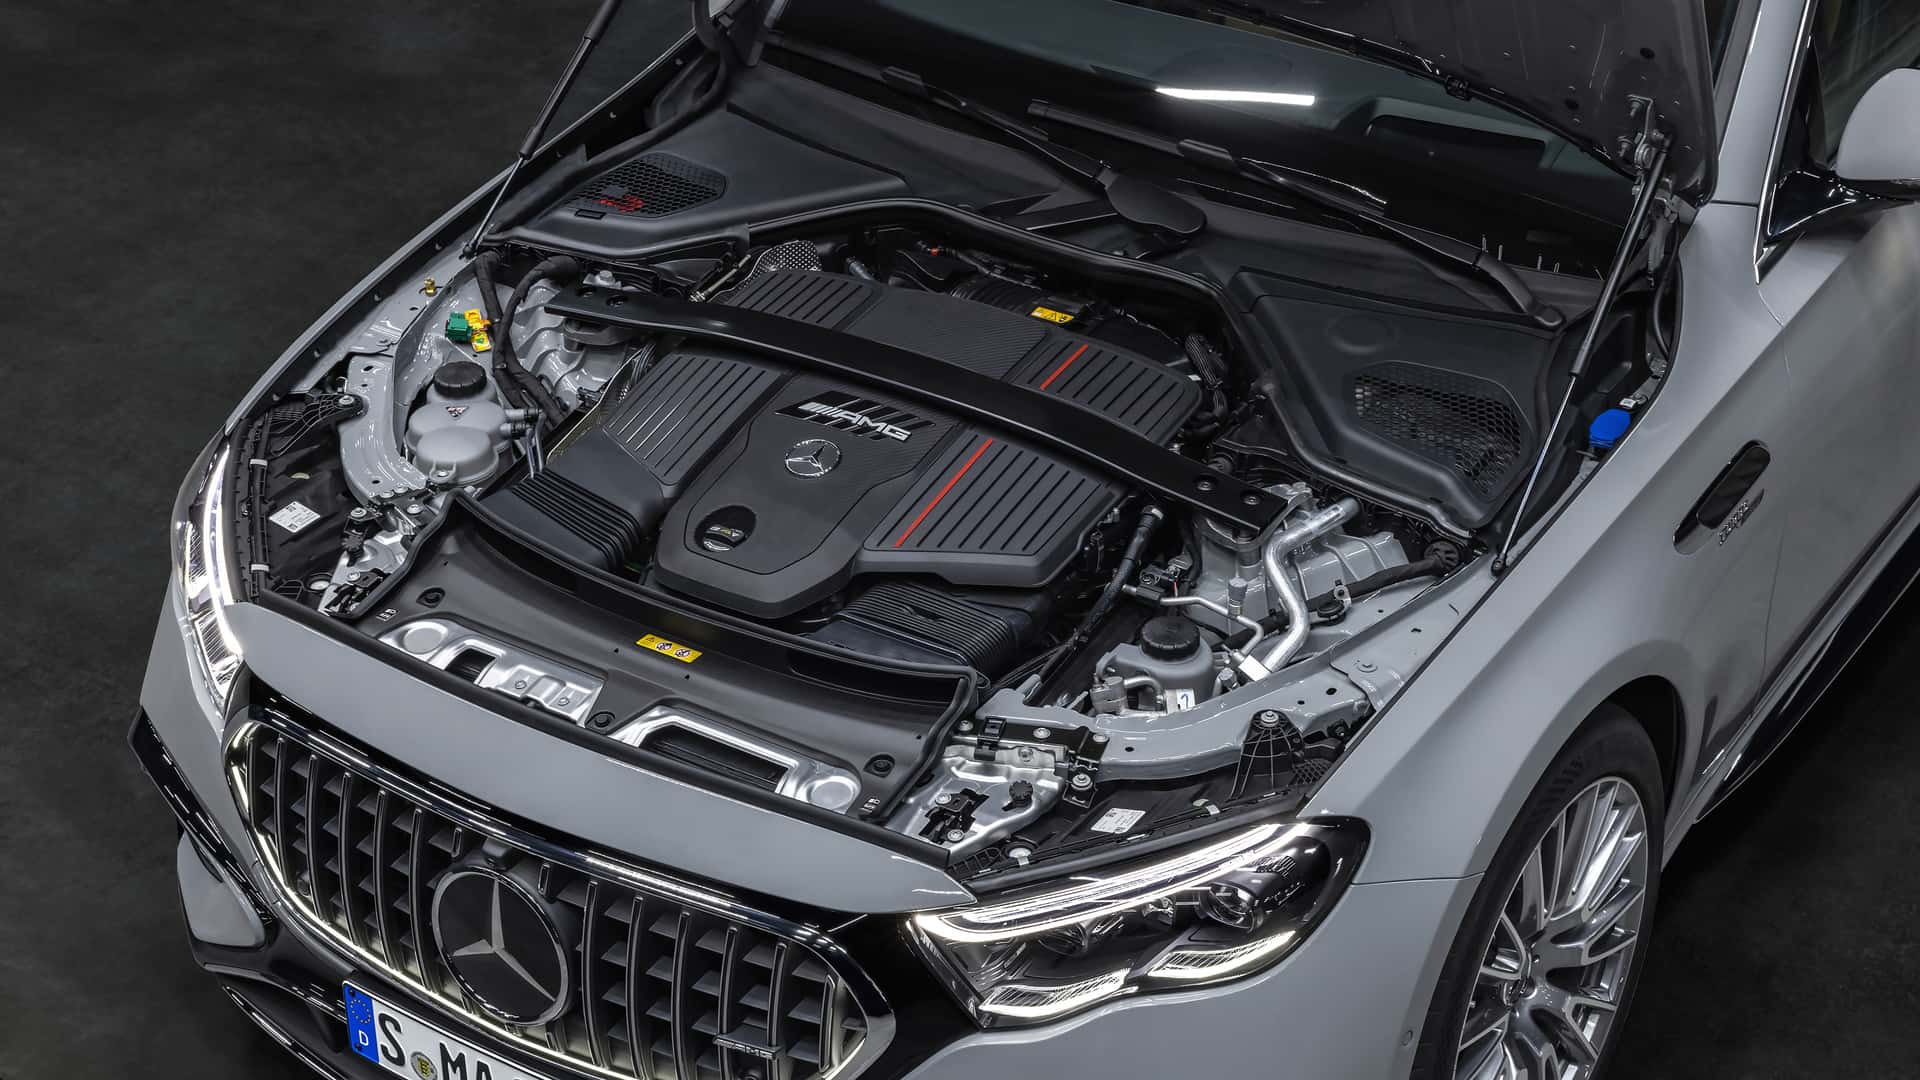 Mercedes-Benz quay lại đầu tư lớn vào động cơ đốt trong, dễ là hybrid, S-Class facelift sắp tới hưởng lợi- Ảnh 2.